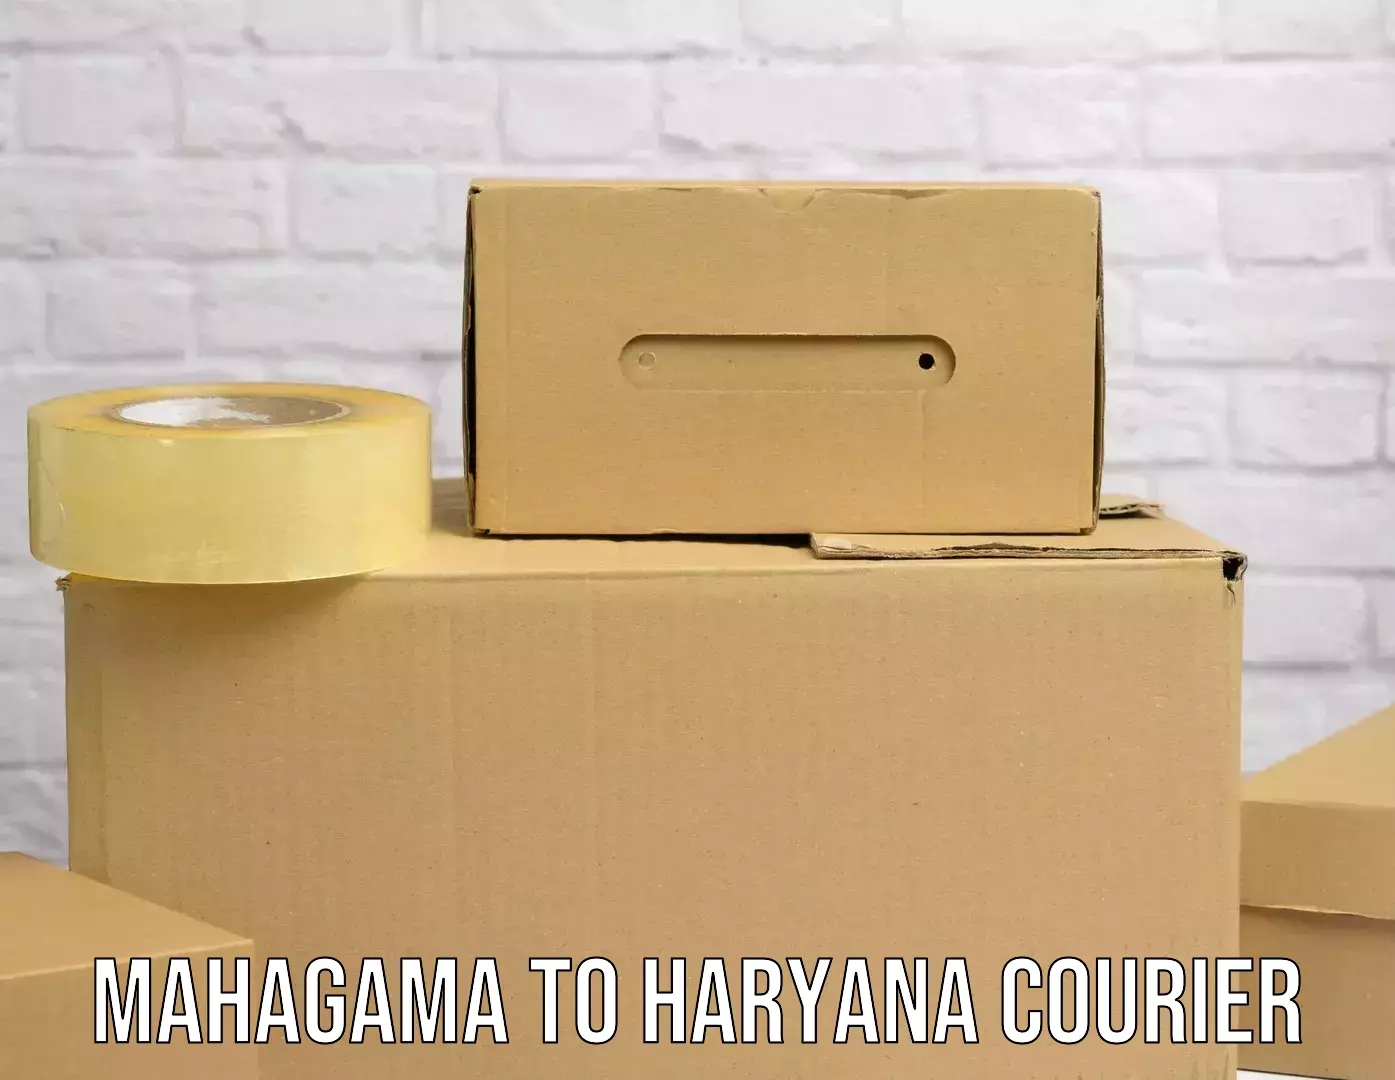 Digital courier platforms Mahagama to Gurugram